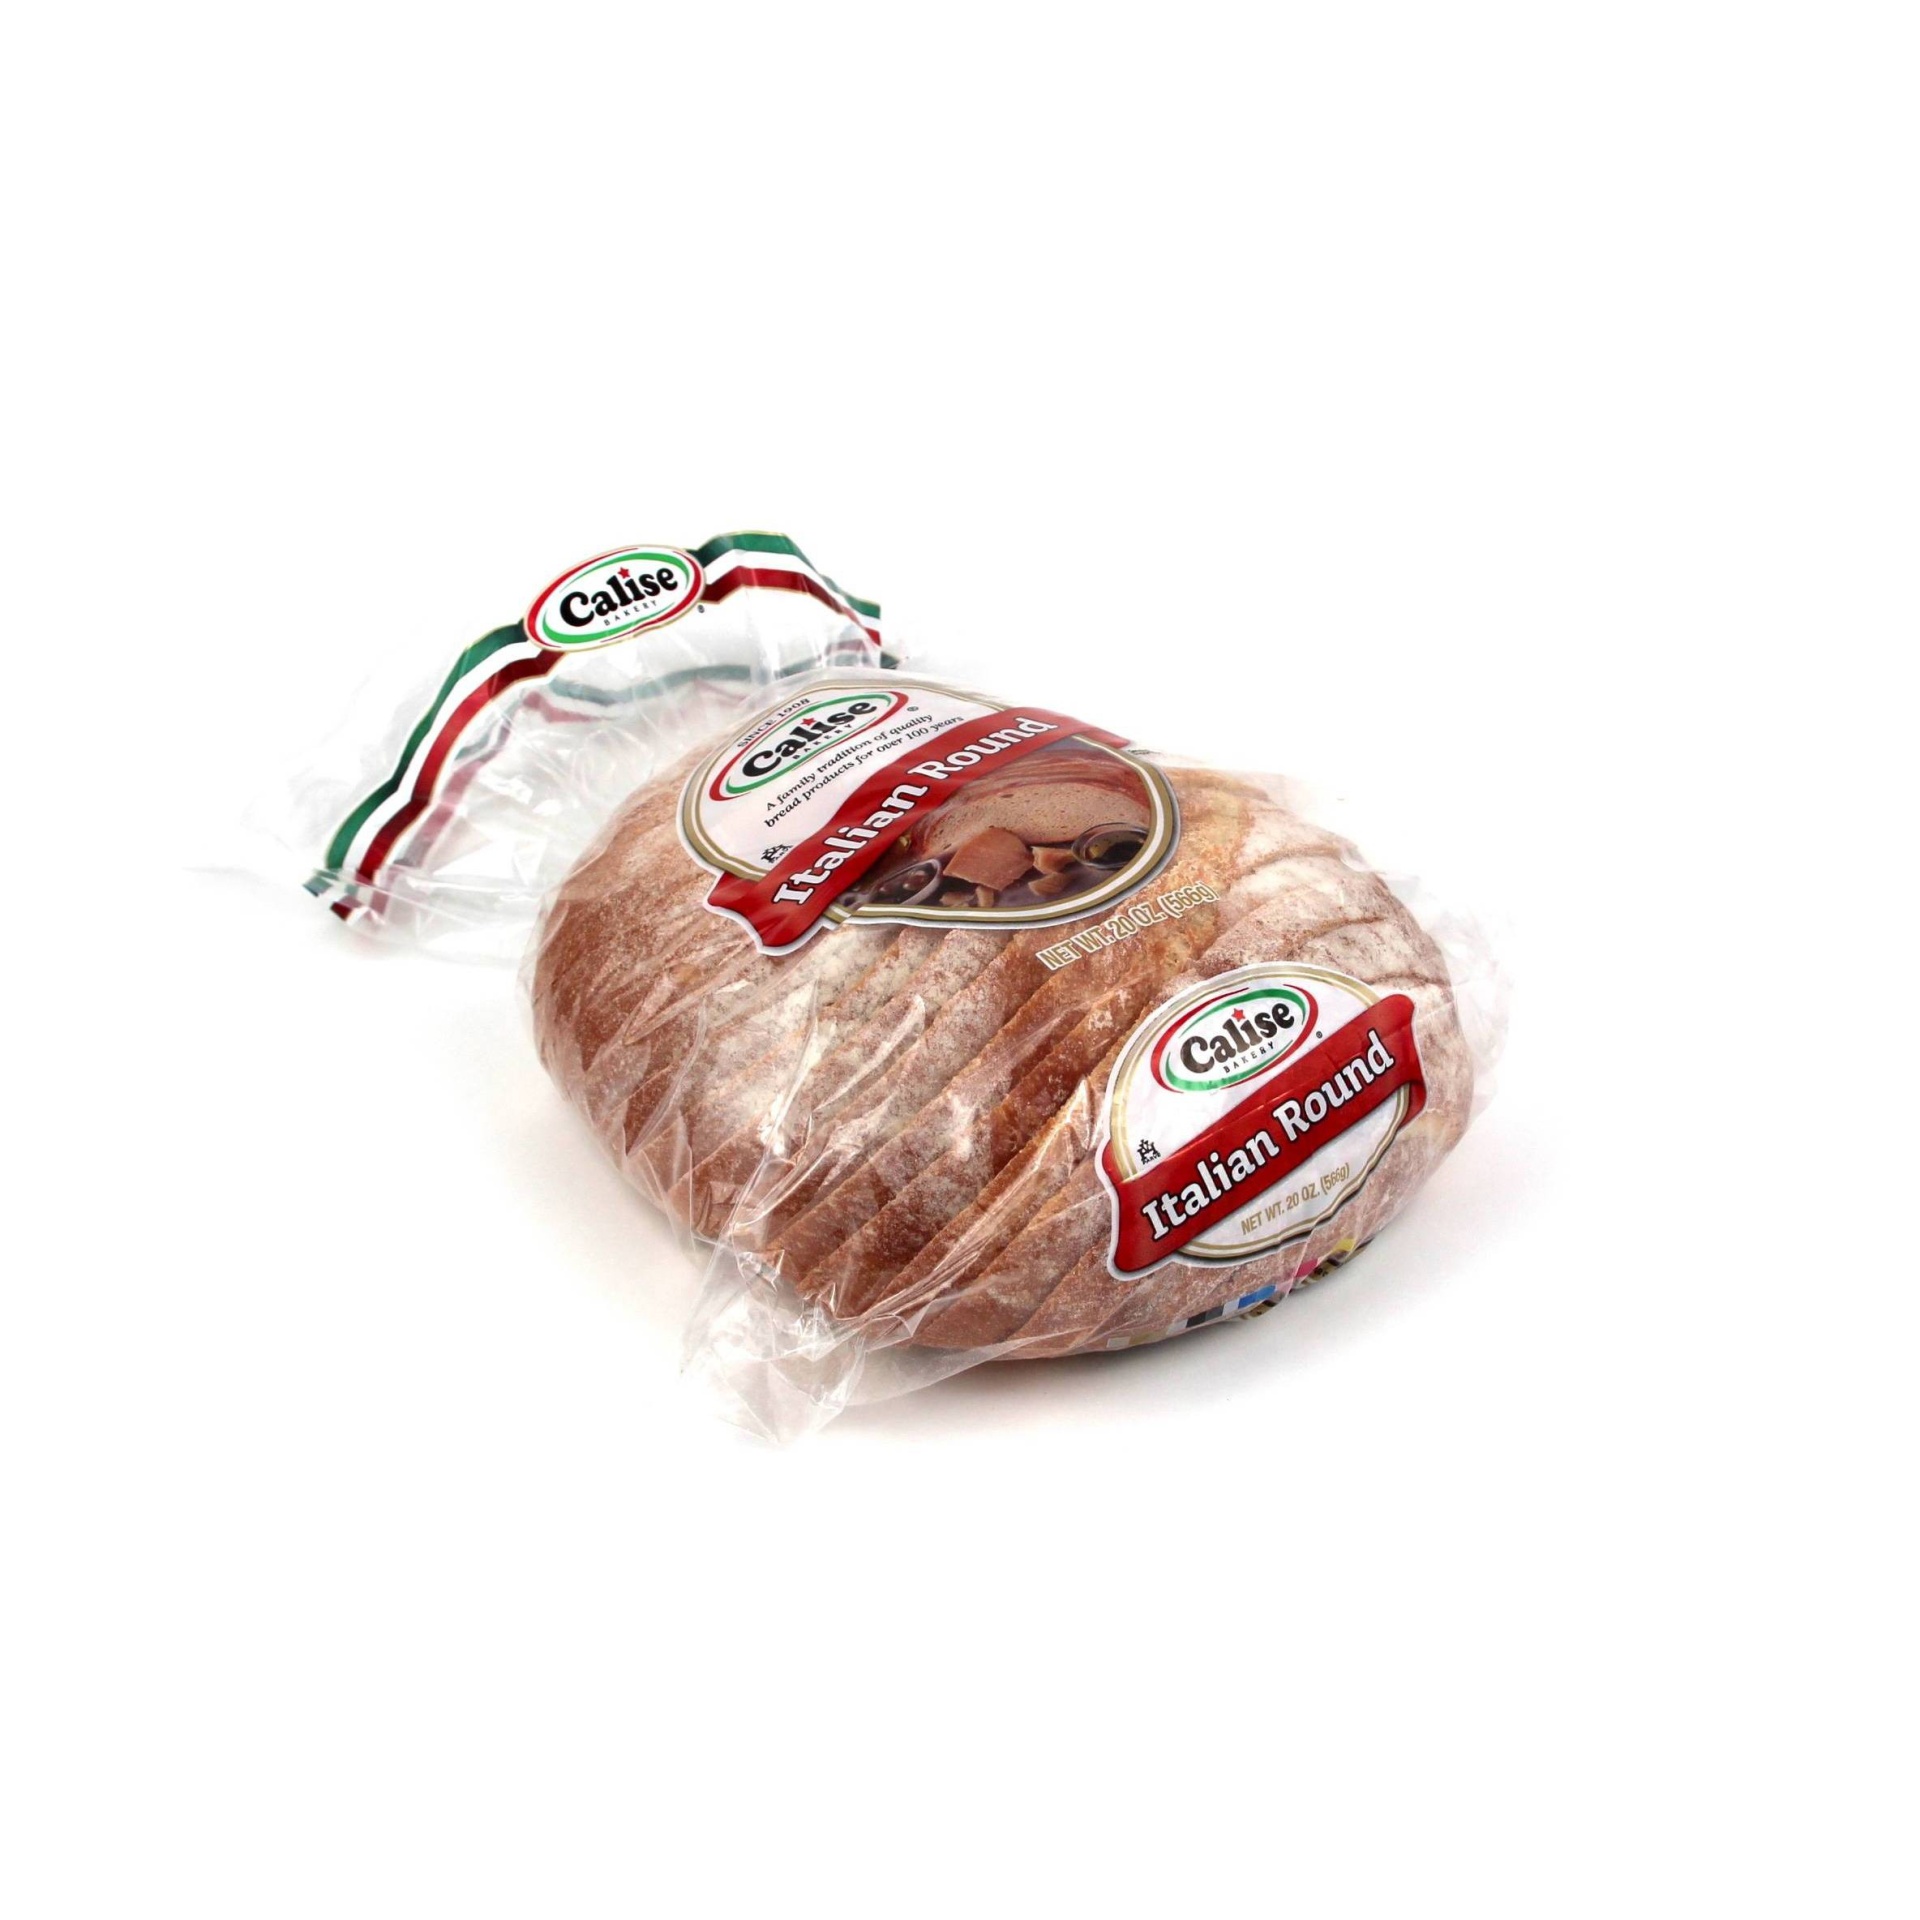 slide 1 of 1, Calise Bakery Calise Large Round Italian Bread - 20oz, 20 oz